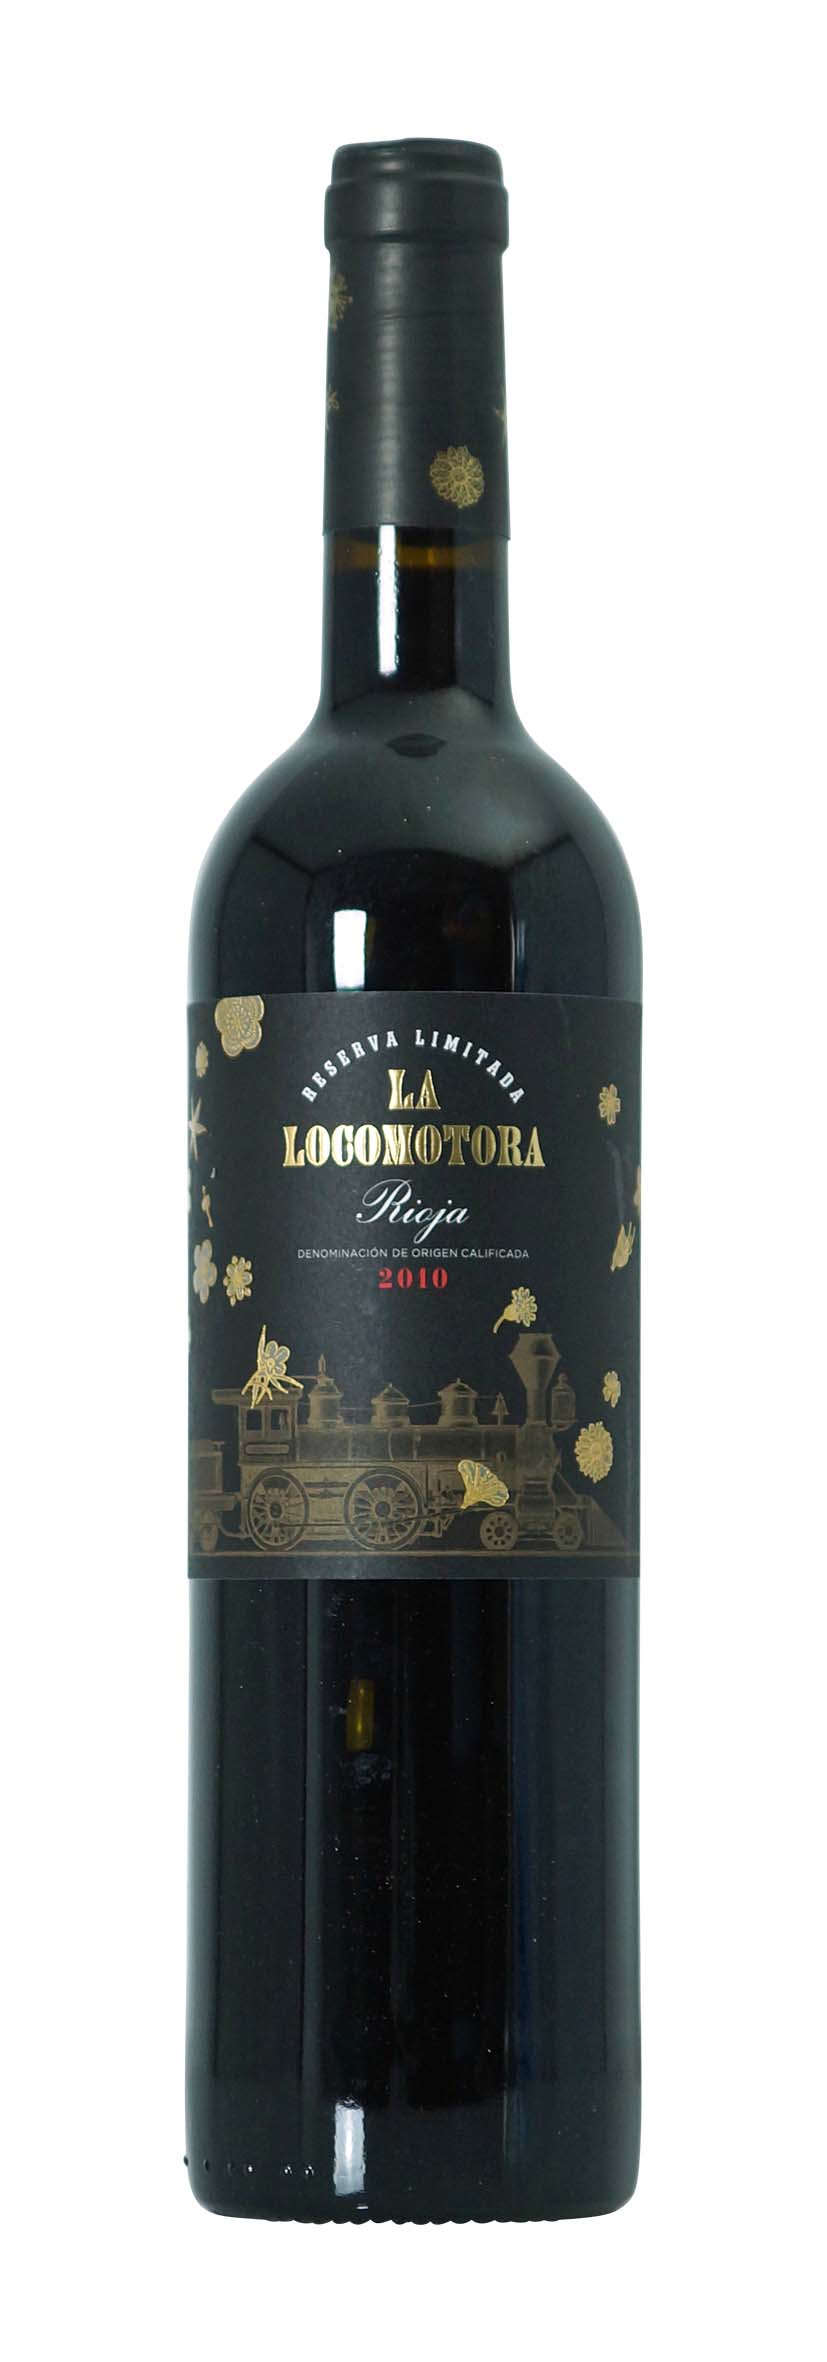 Rioja DOCa La Locomotora Reserva Limitada - Finca Nueva 2010